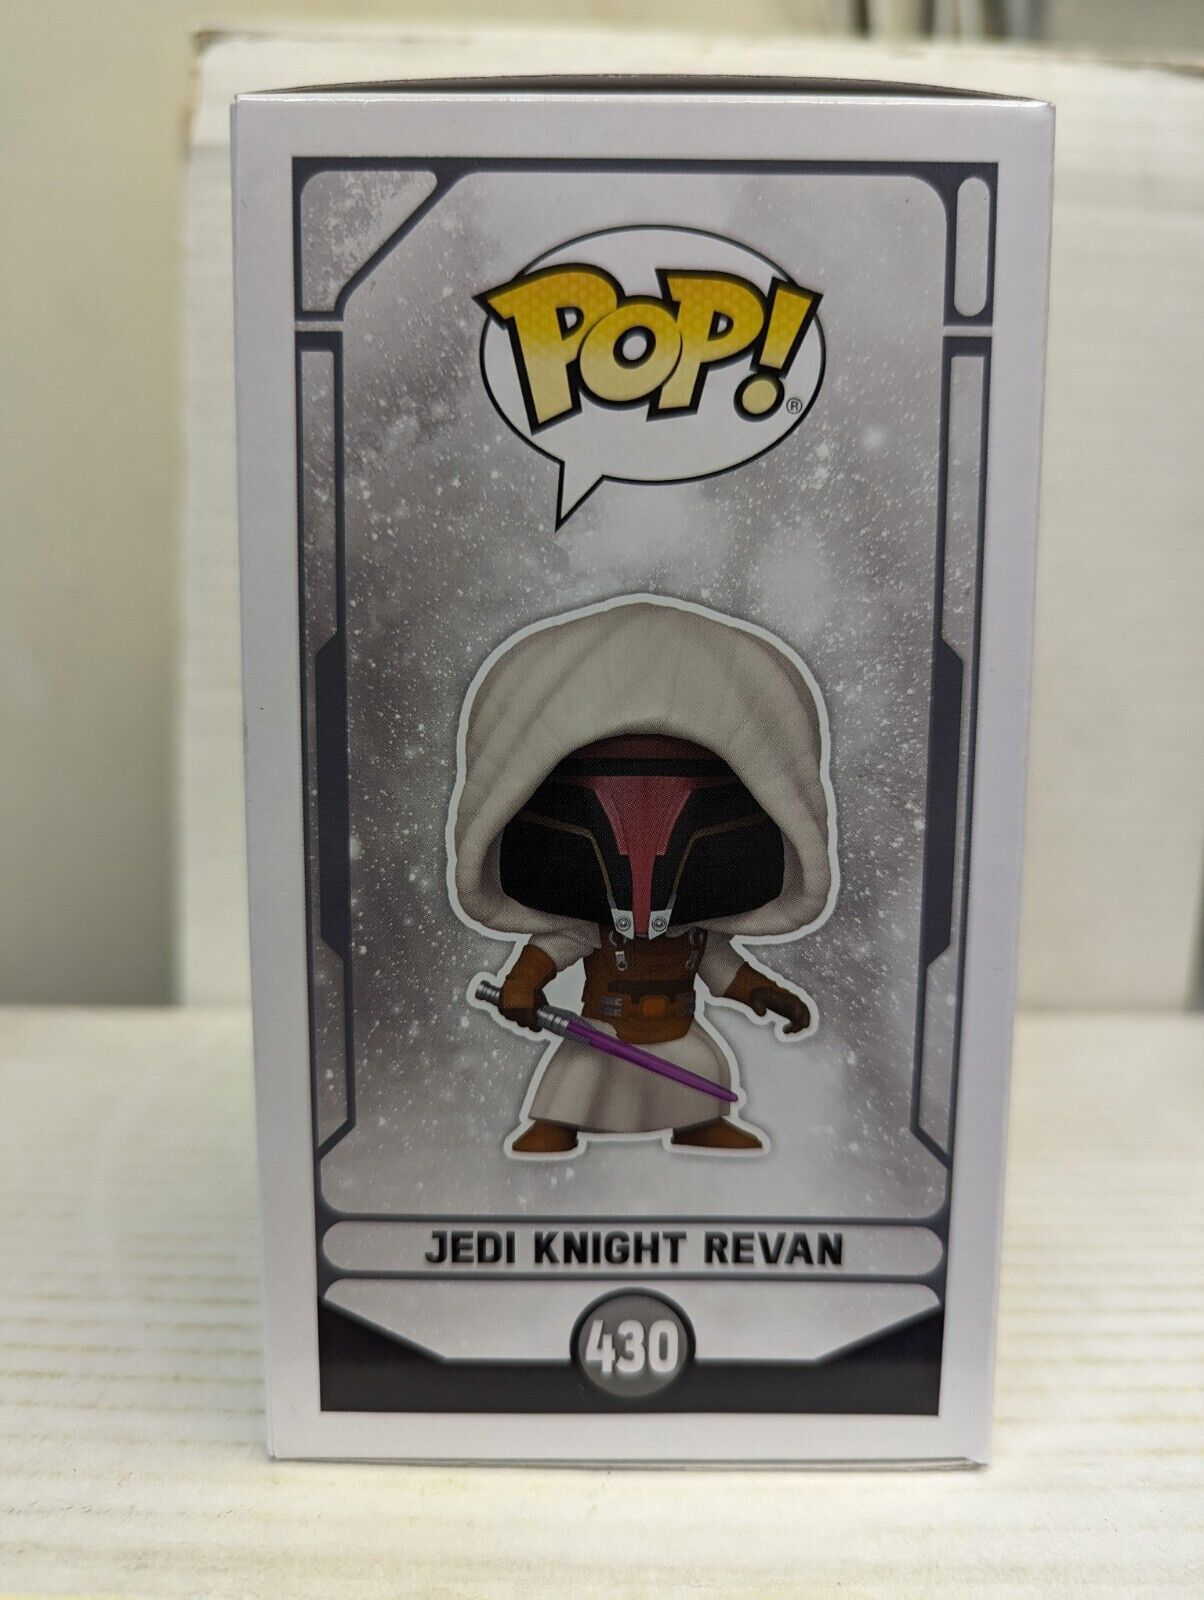 Funko Pop Jedi Knight Revan 430 GameStop Star Wars